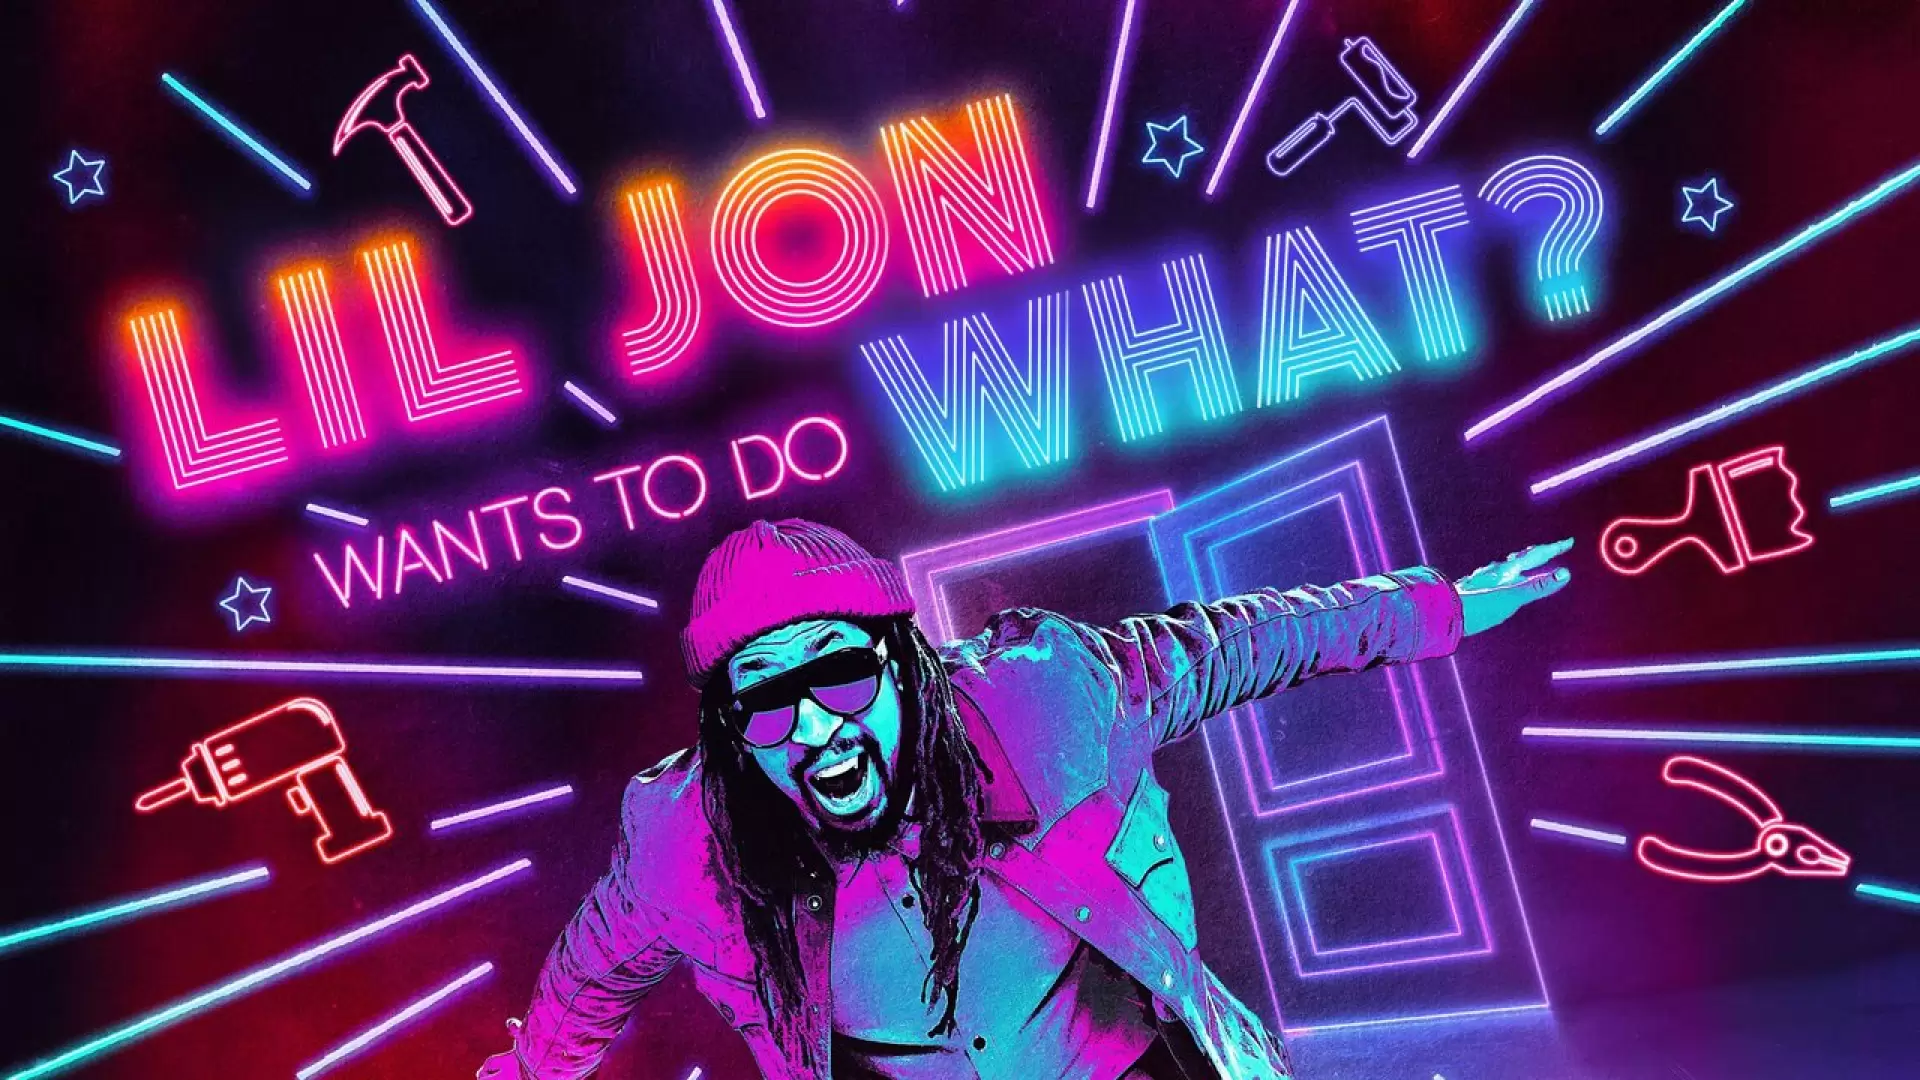 دانلود سریال Lil Jon Wants to Do What? 2022